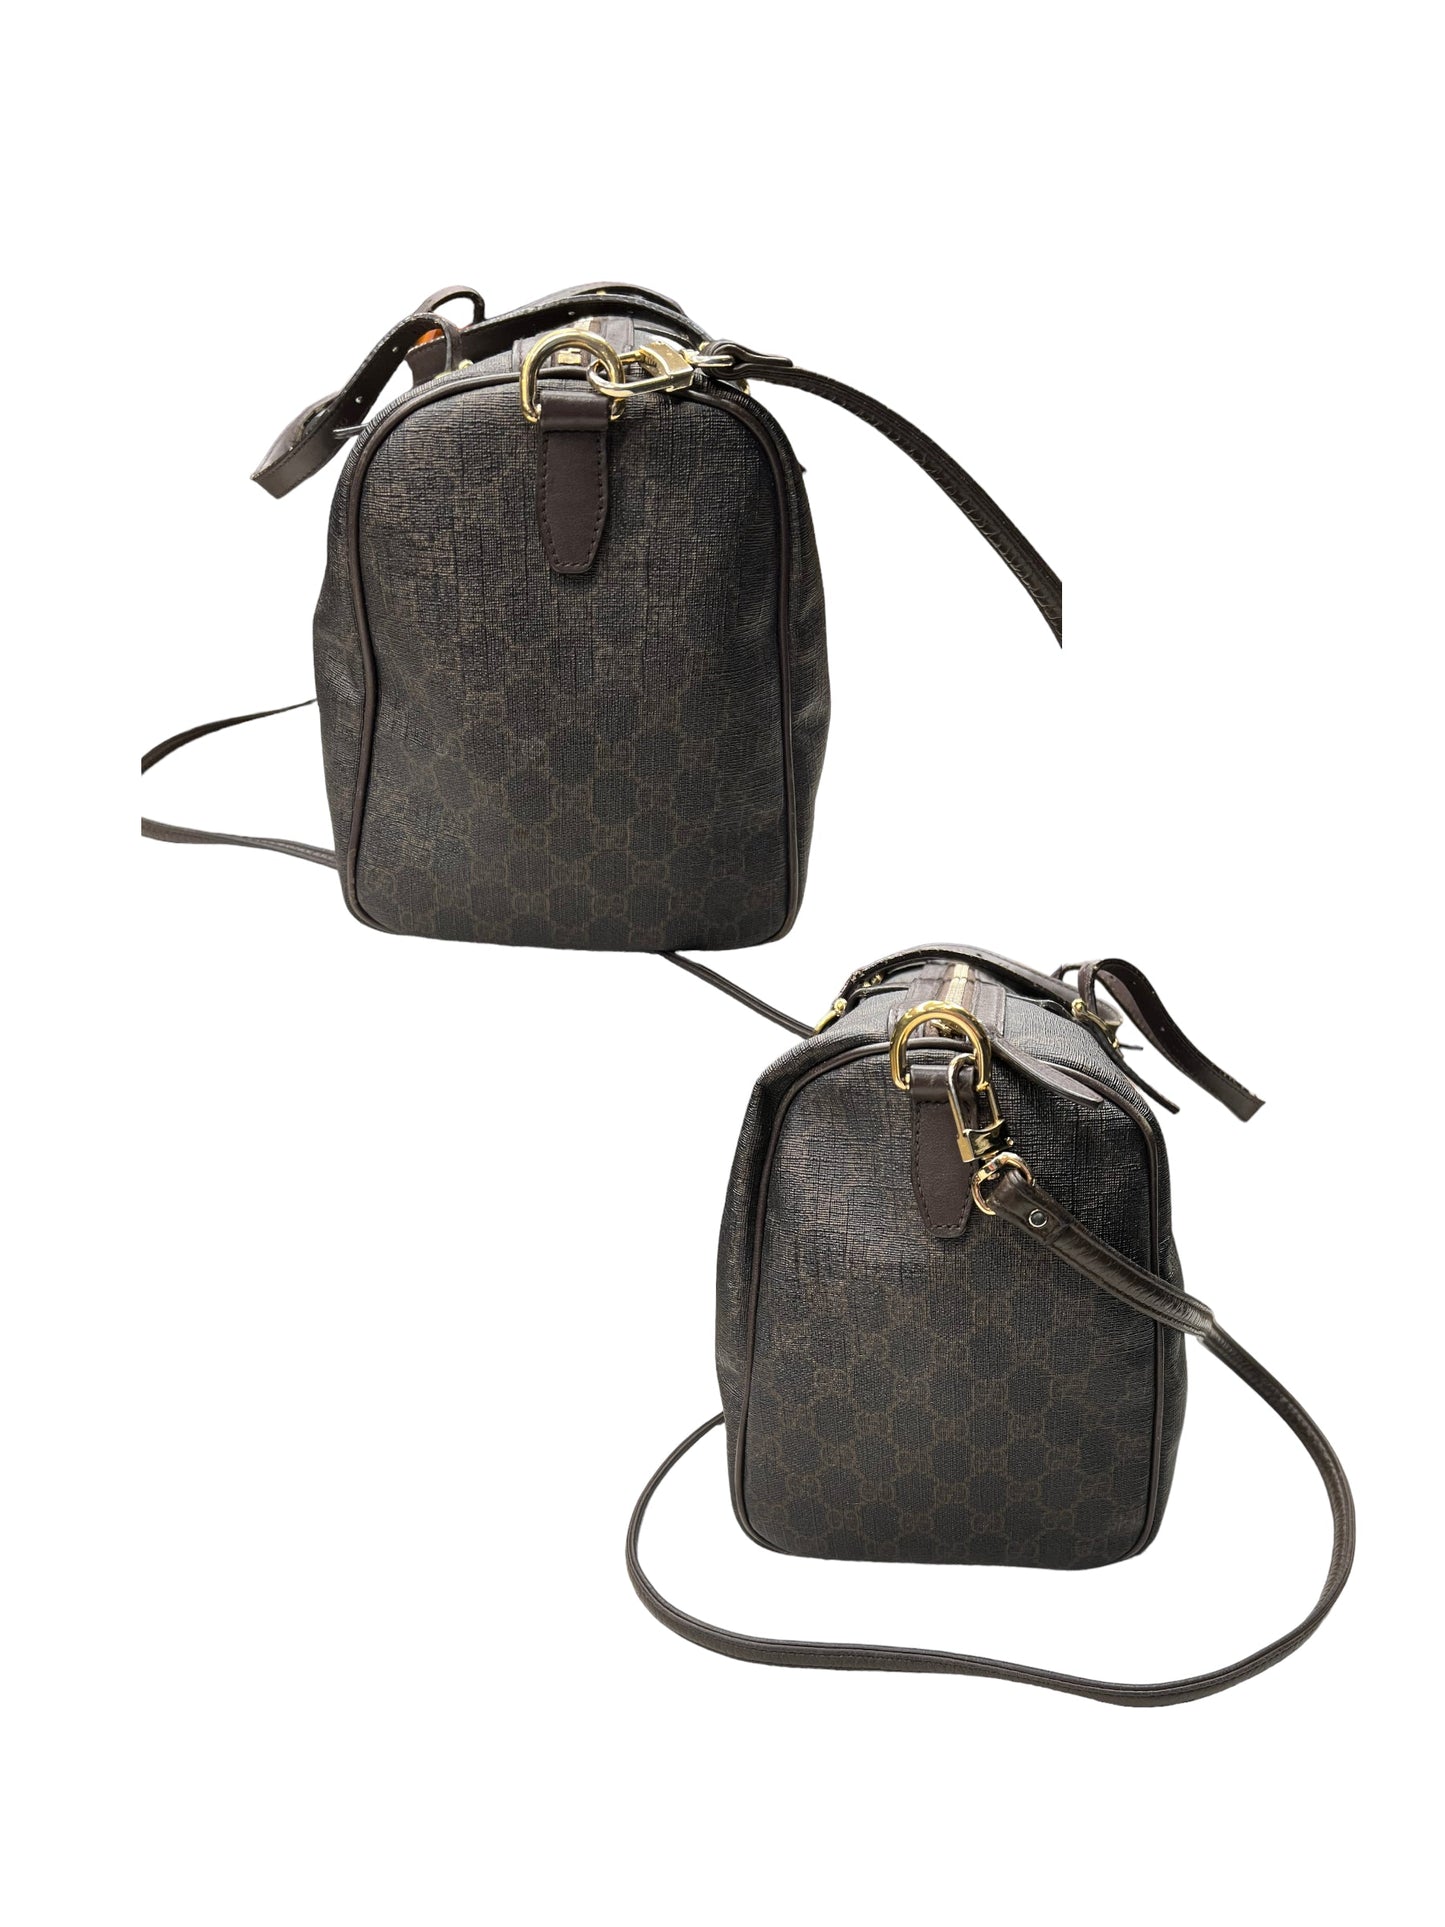 Handbag Designer By Gucci  Size: Medium